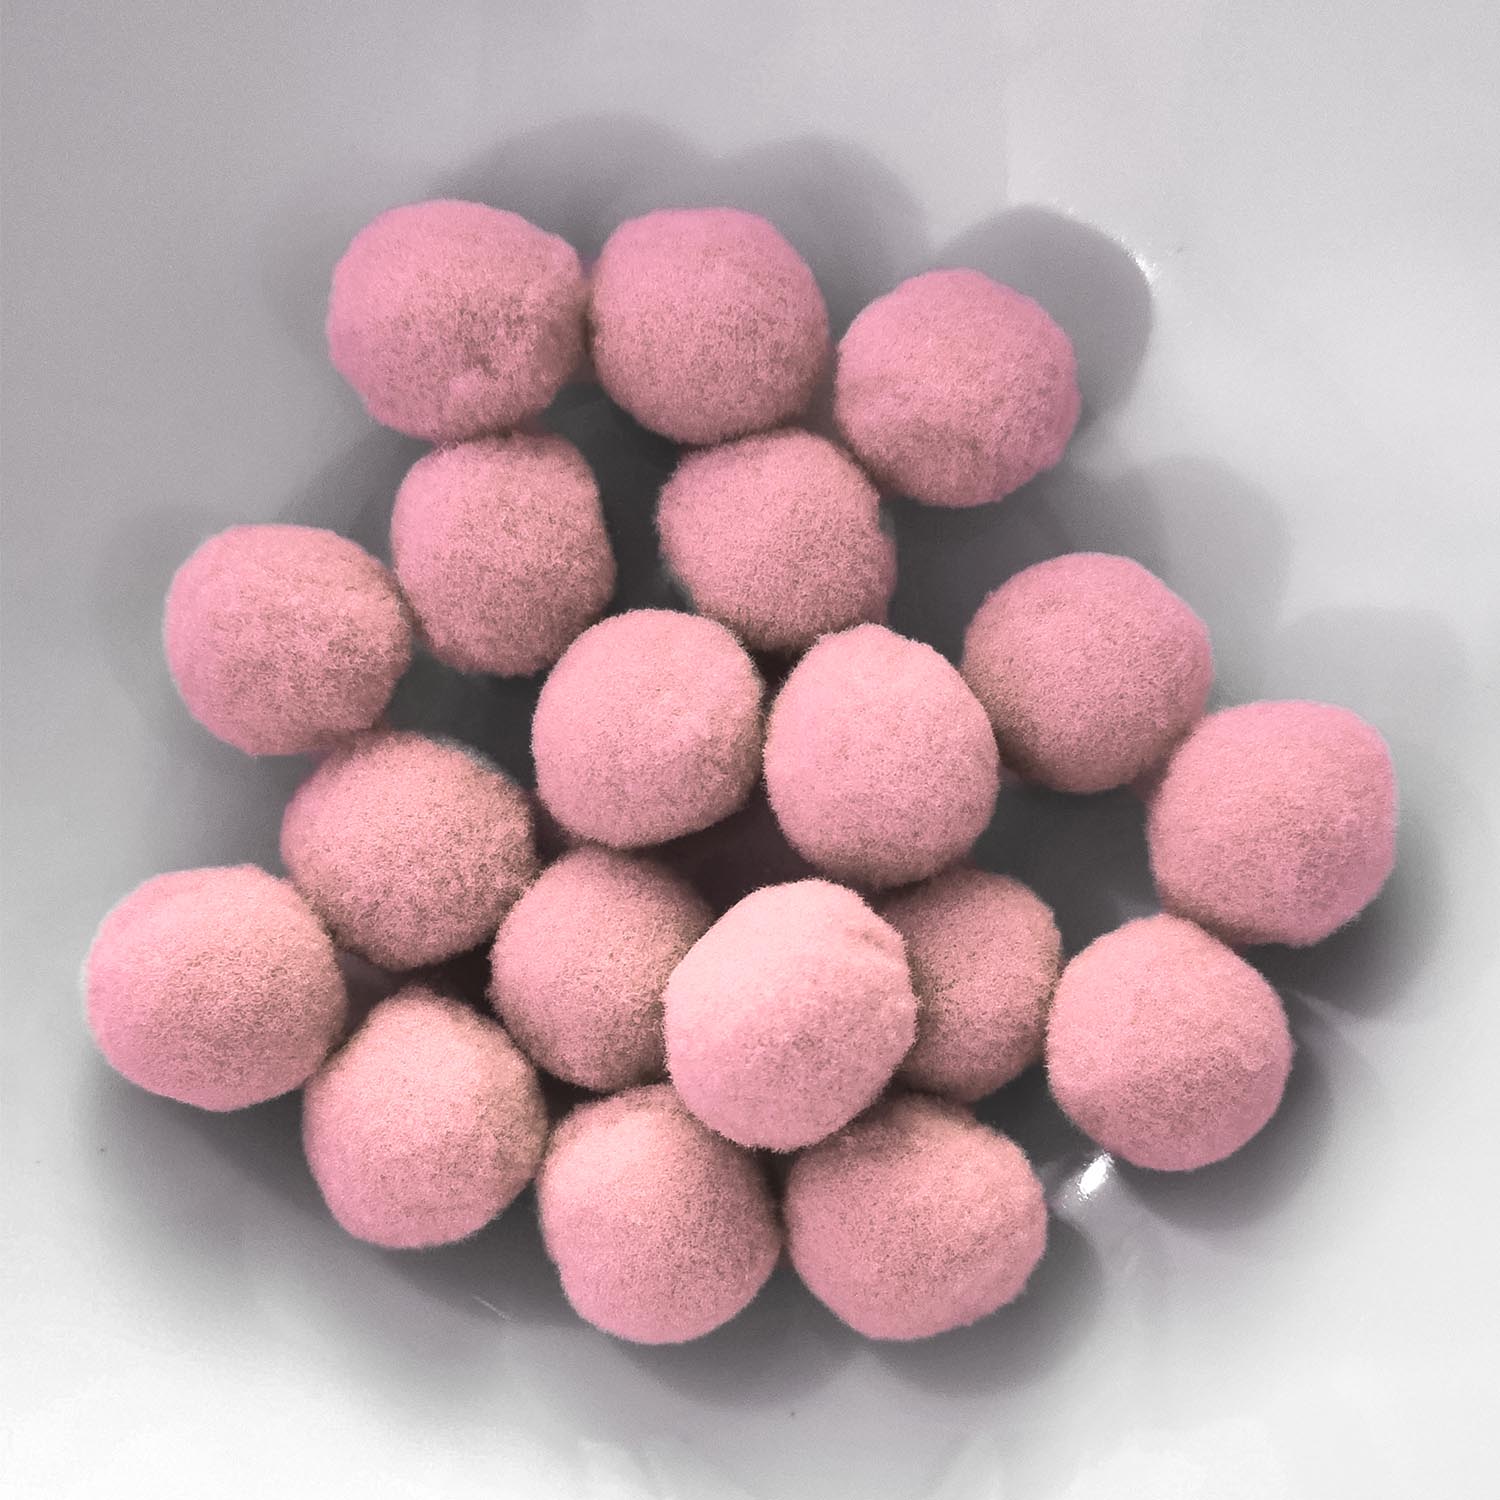 PomPon / Bälle aus Baumwolle - 20 mm / 25er Set - Rosa hell